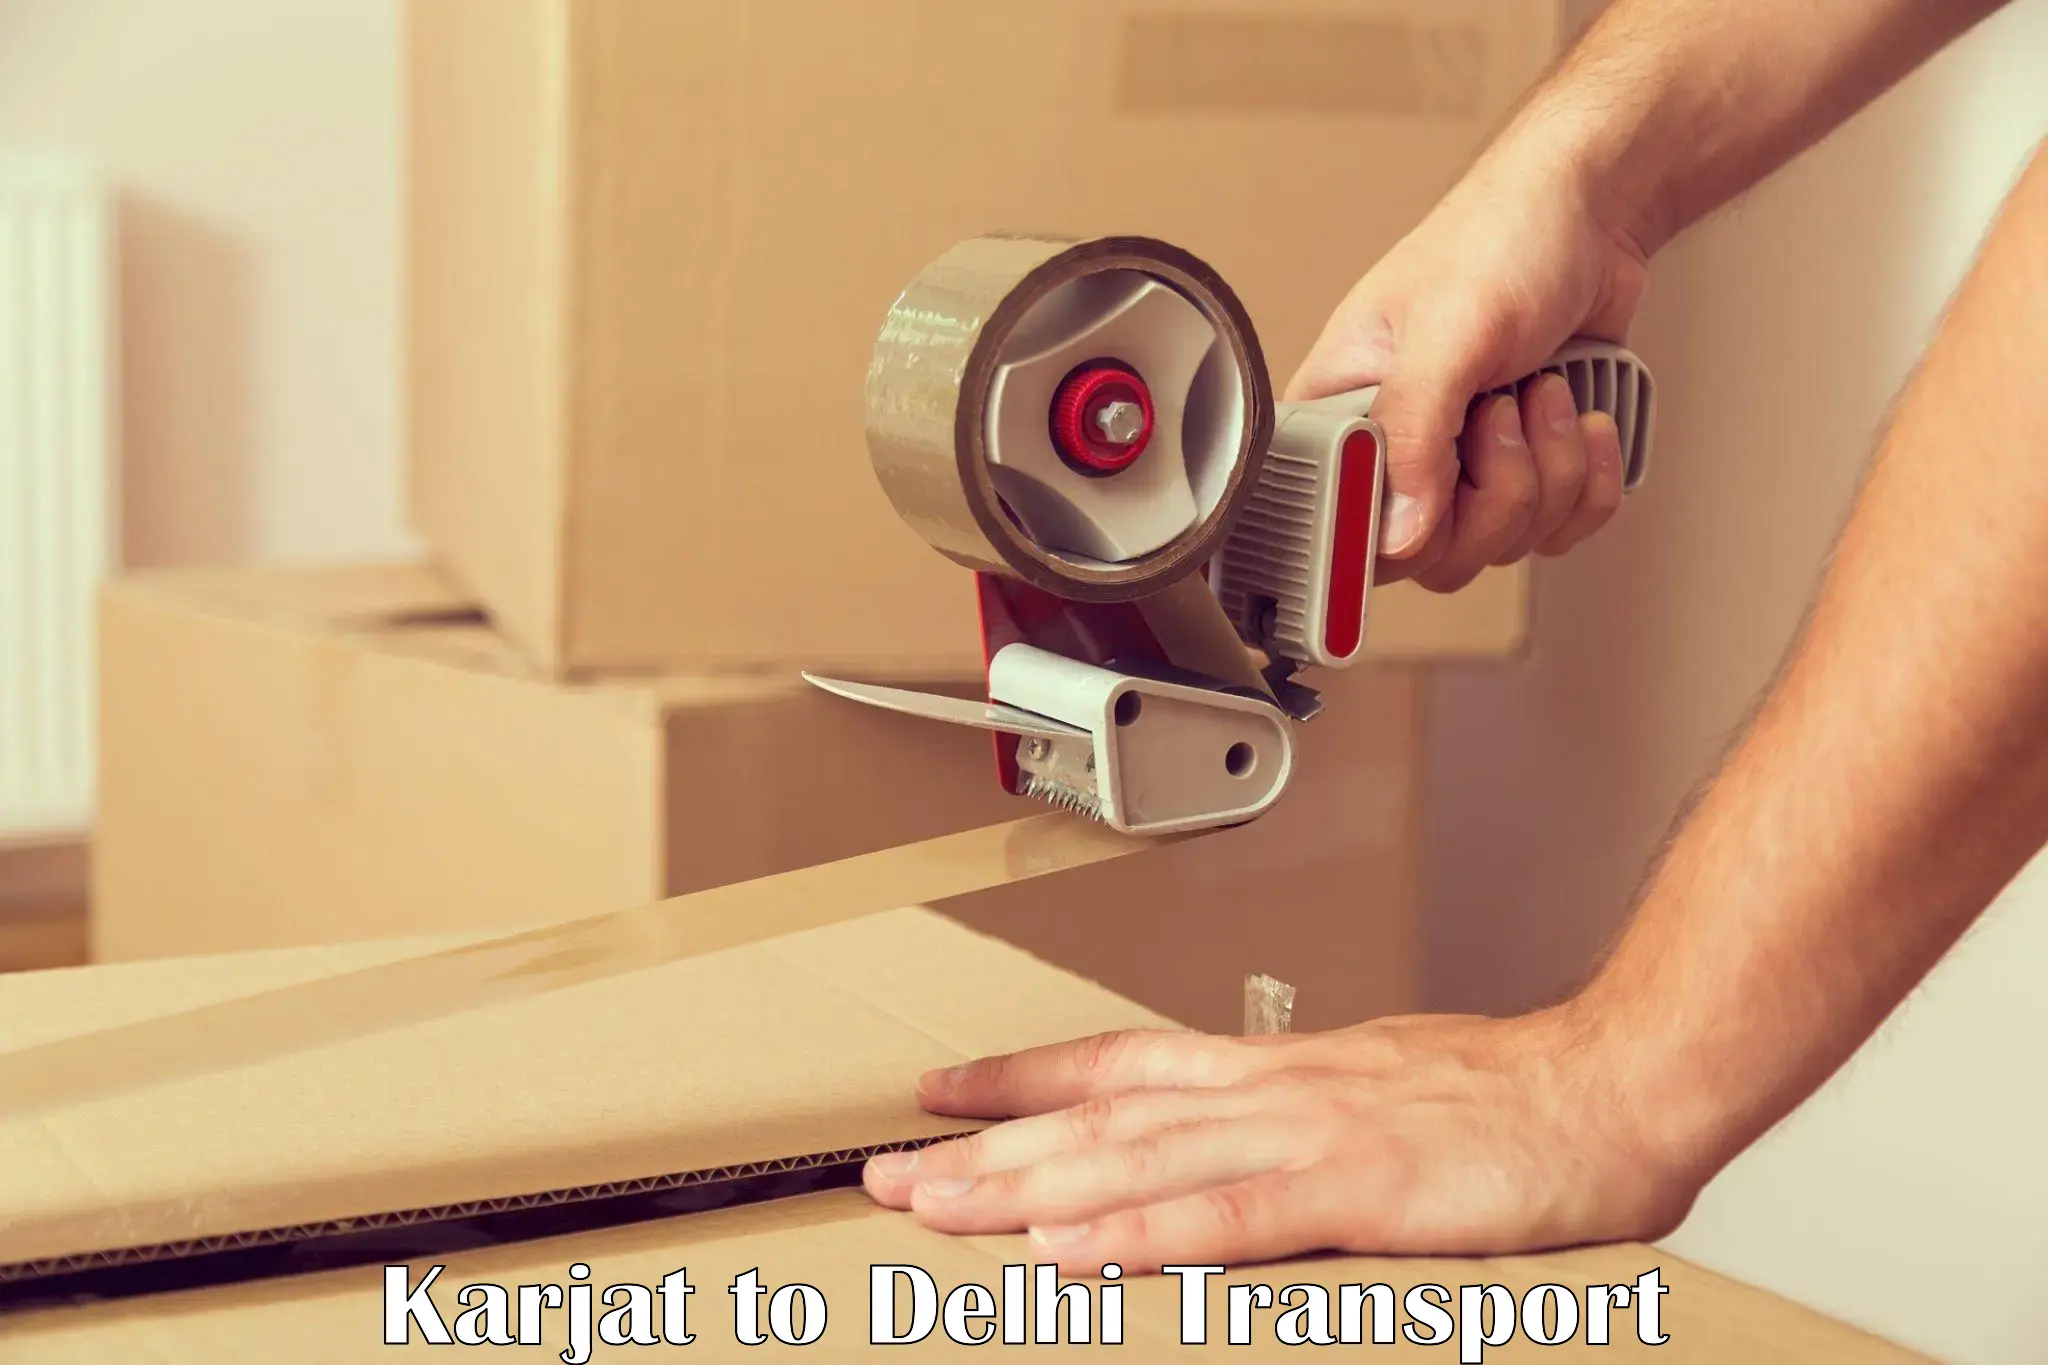 Shipping partner Karjat to NCR